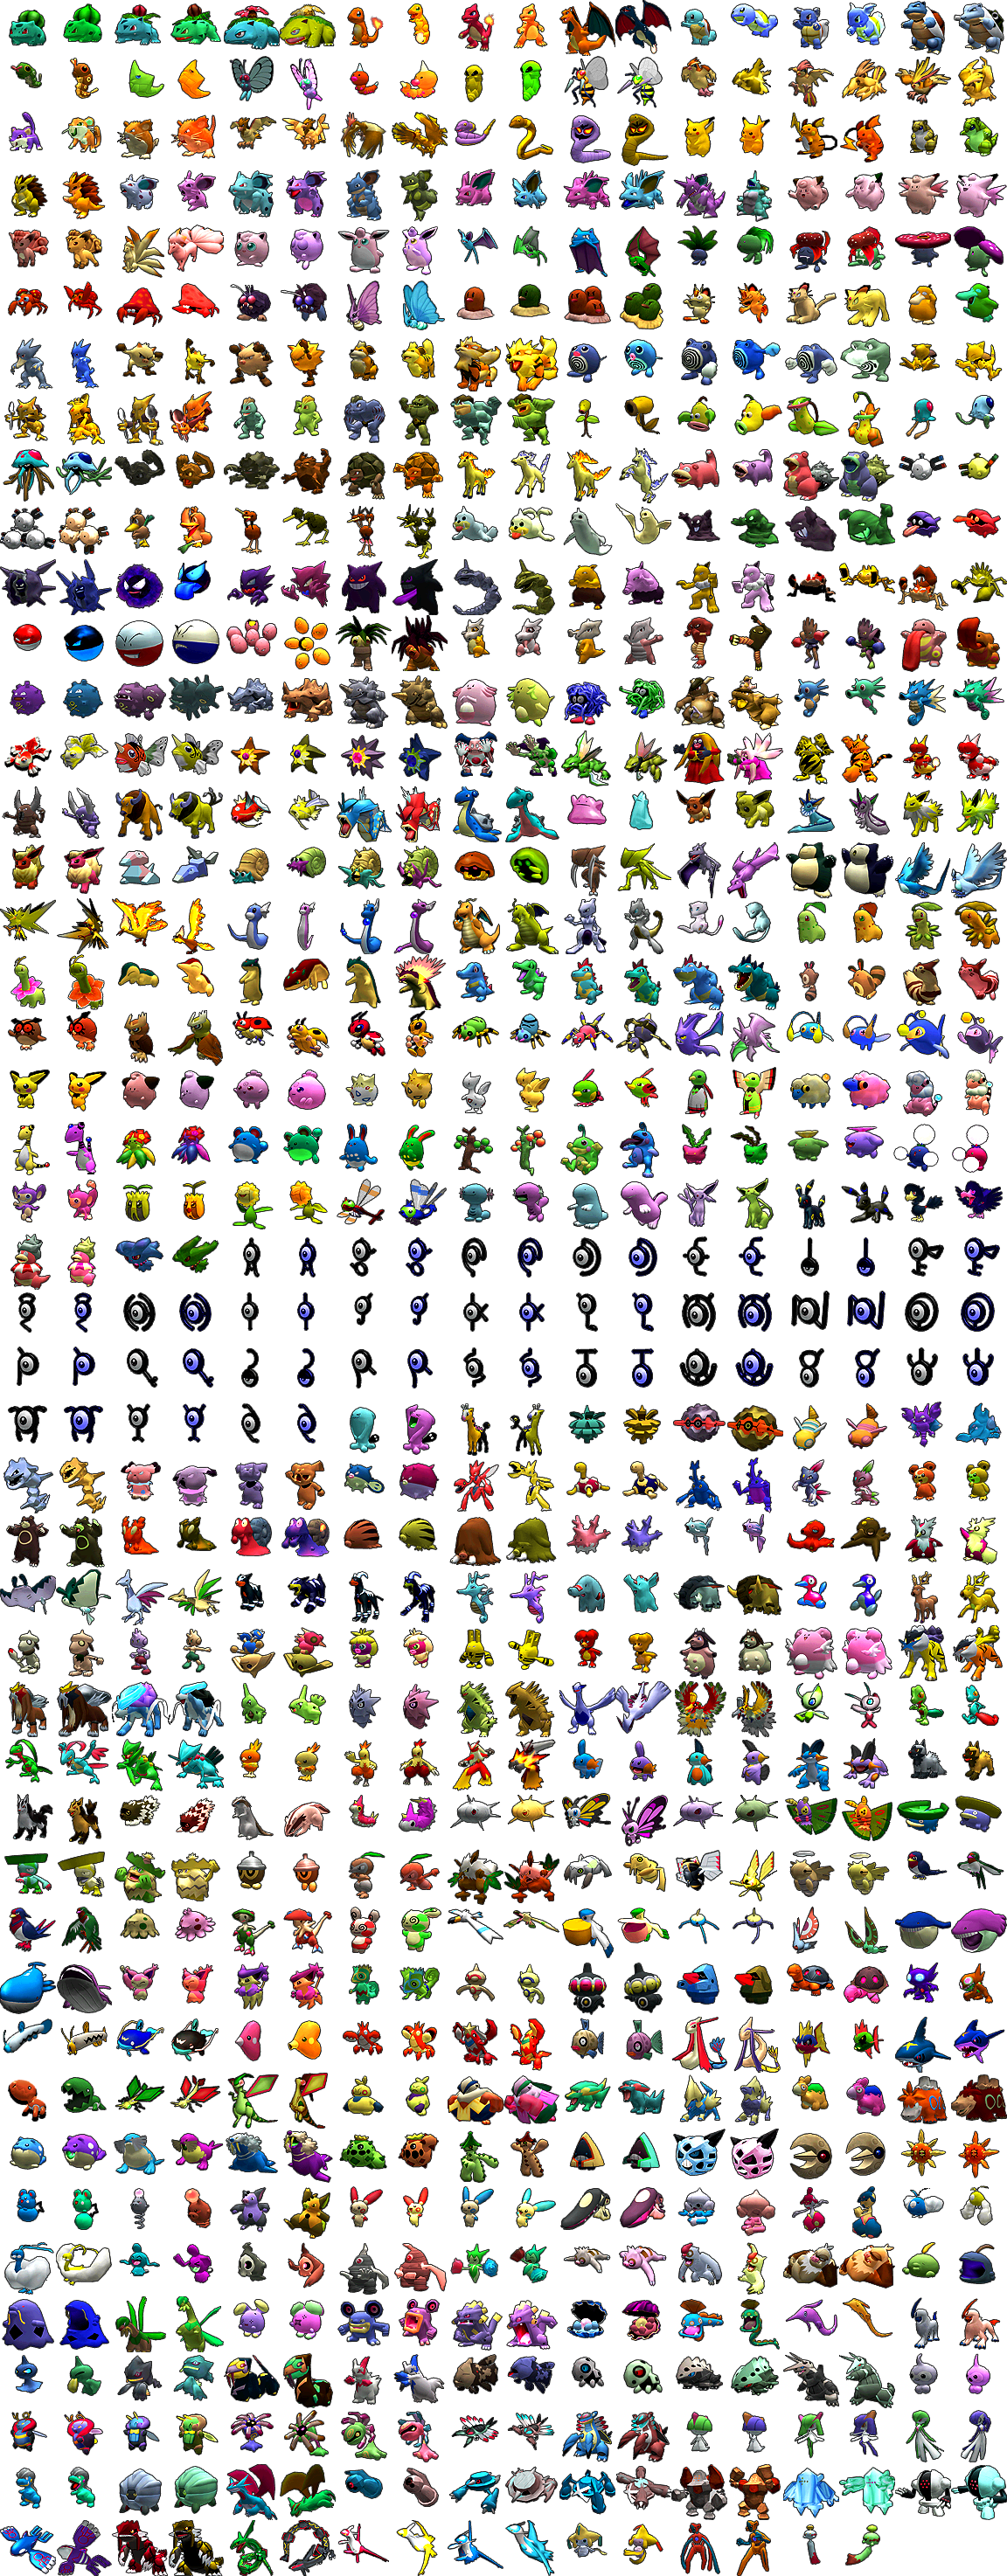 Pokémon XD: Gale of Darkness - Pokémon Body Icons